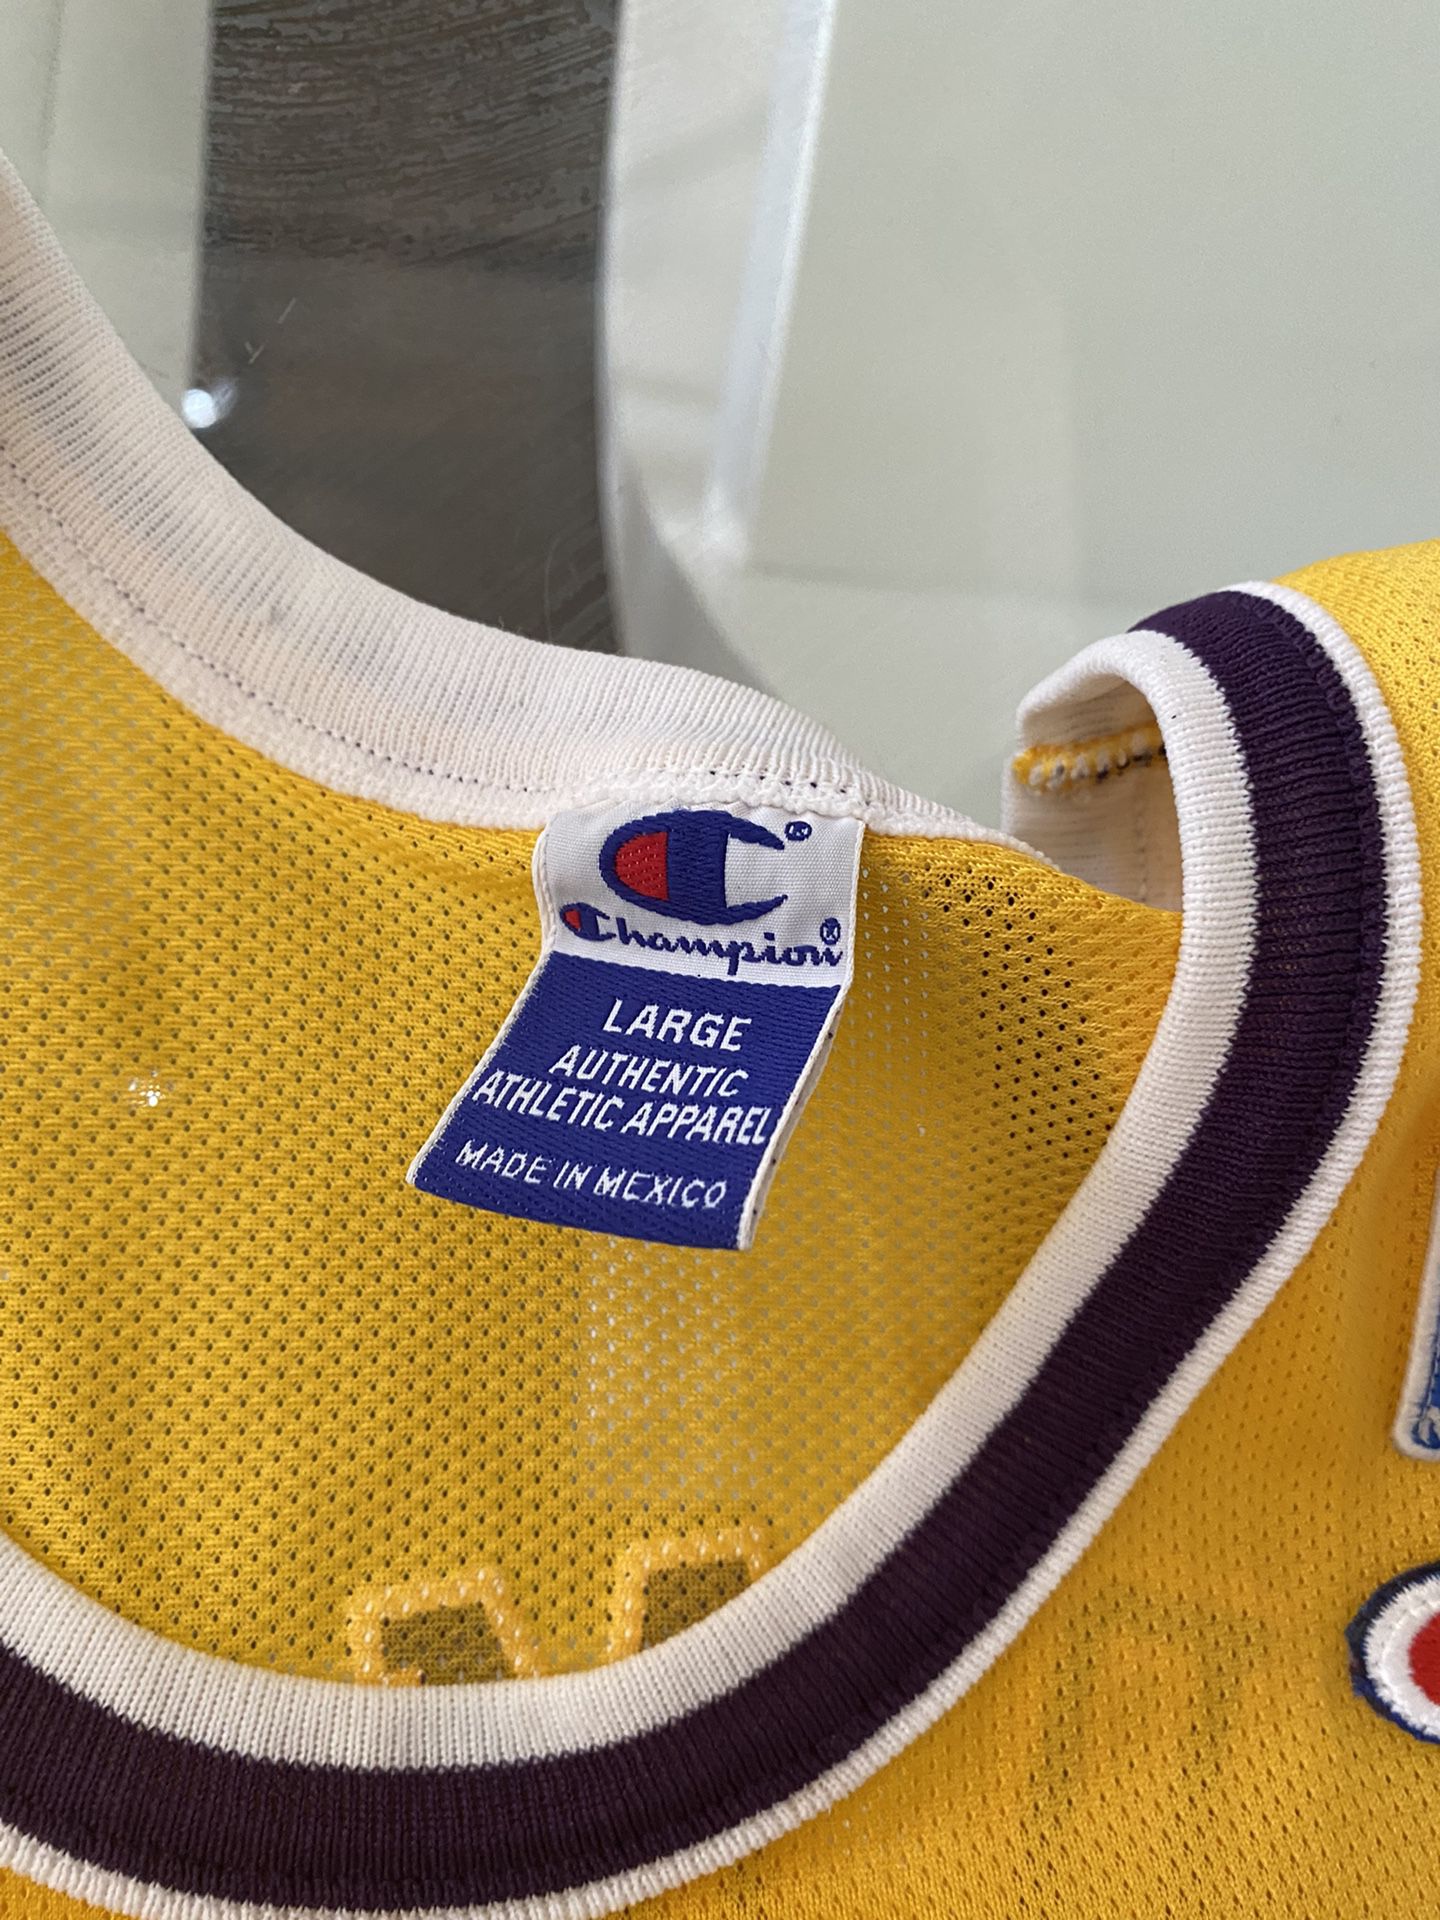 Los Angeles Lakers Dennis Rodman #73 Swingman XL for Sale in Houston, TX -  OfferUp